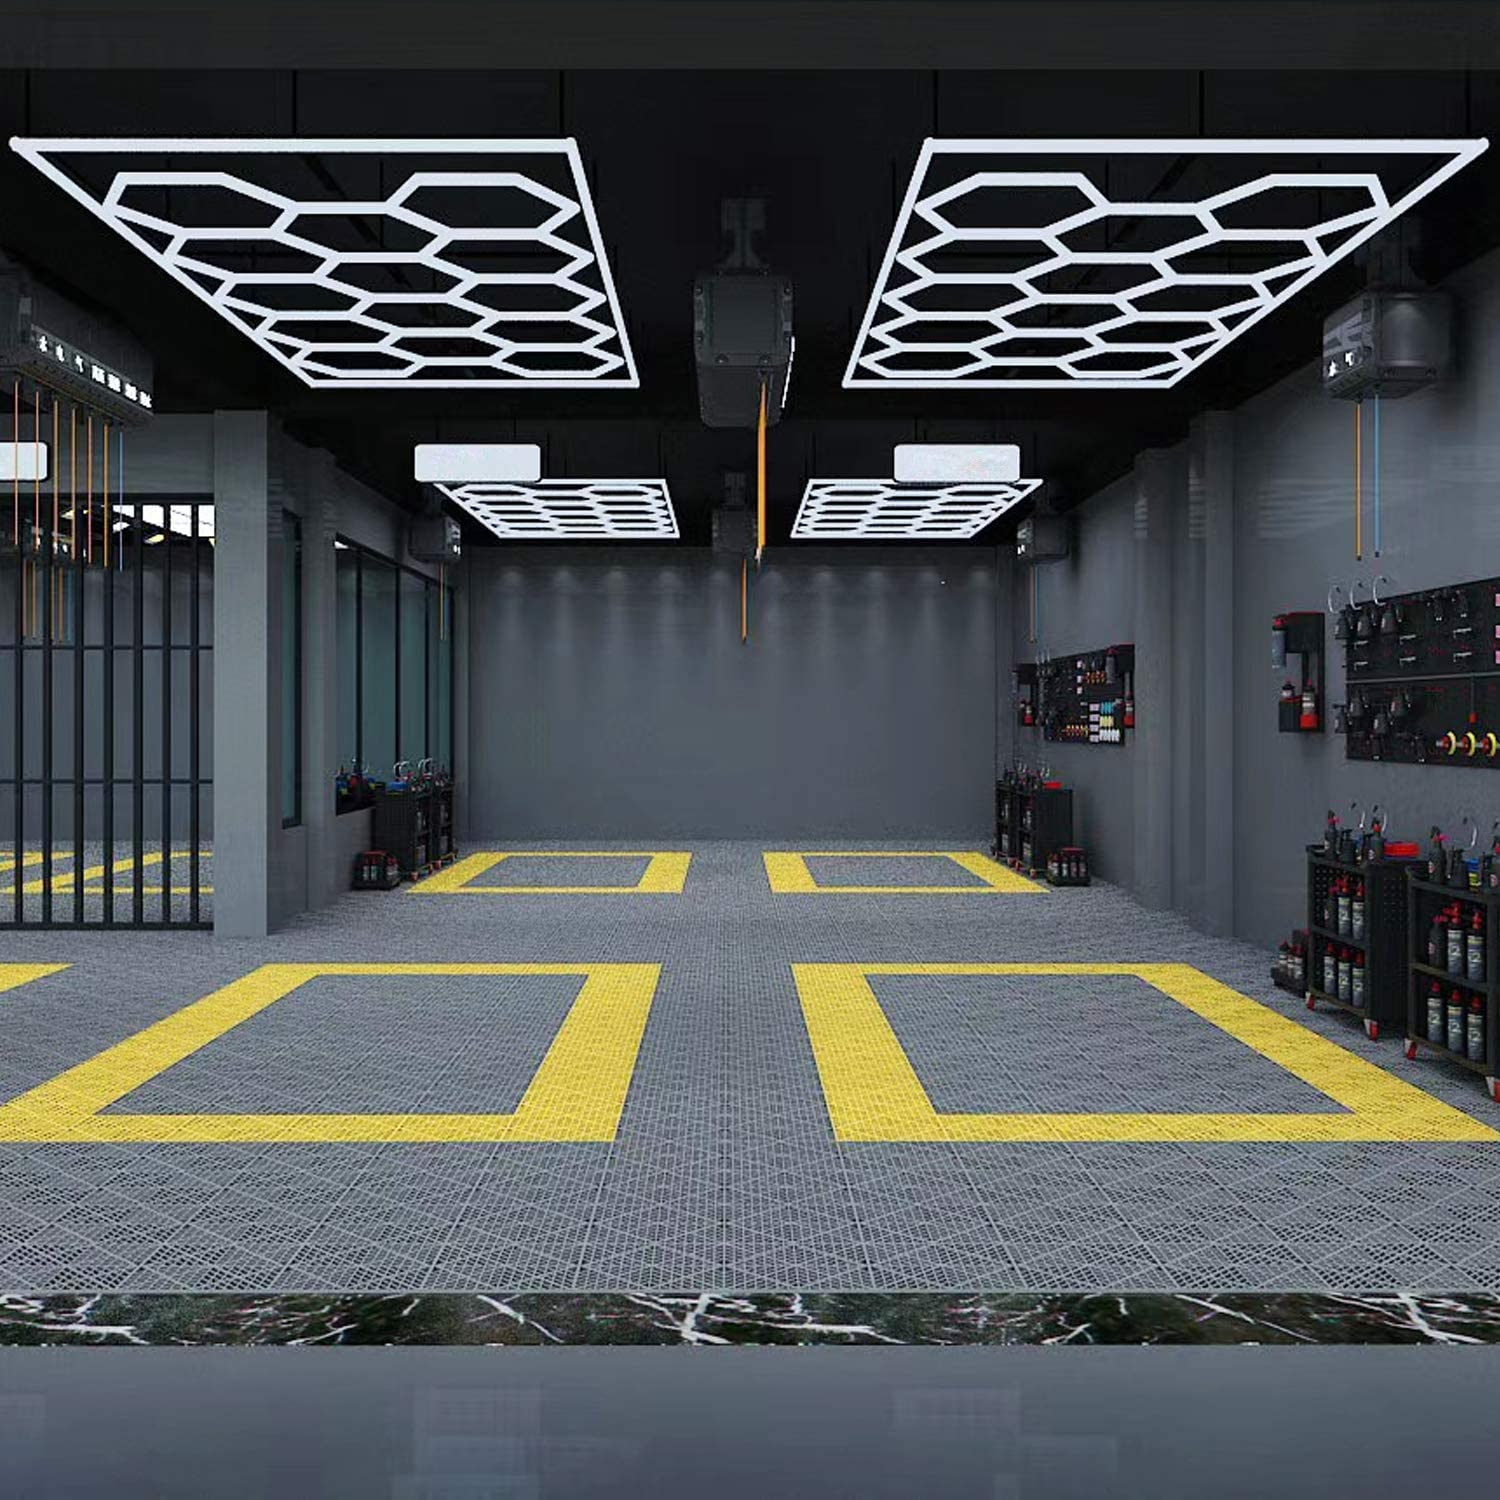 Car Detailing Led Garage Light,15 Hexagonal Grid Systems Led Shop